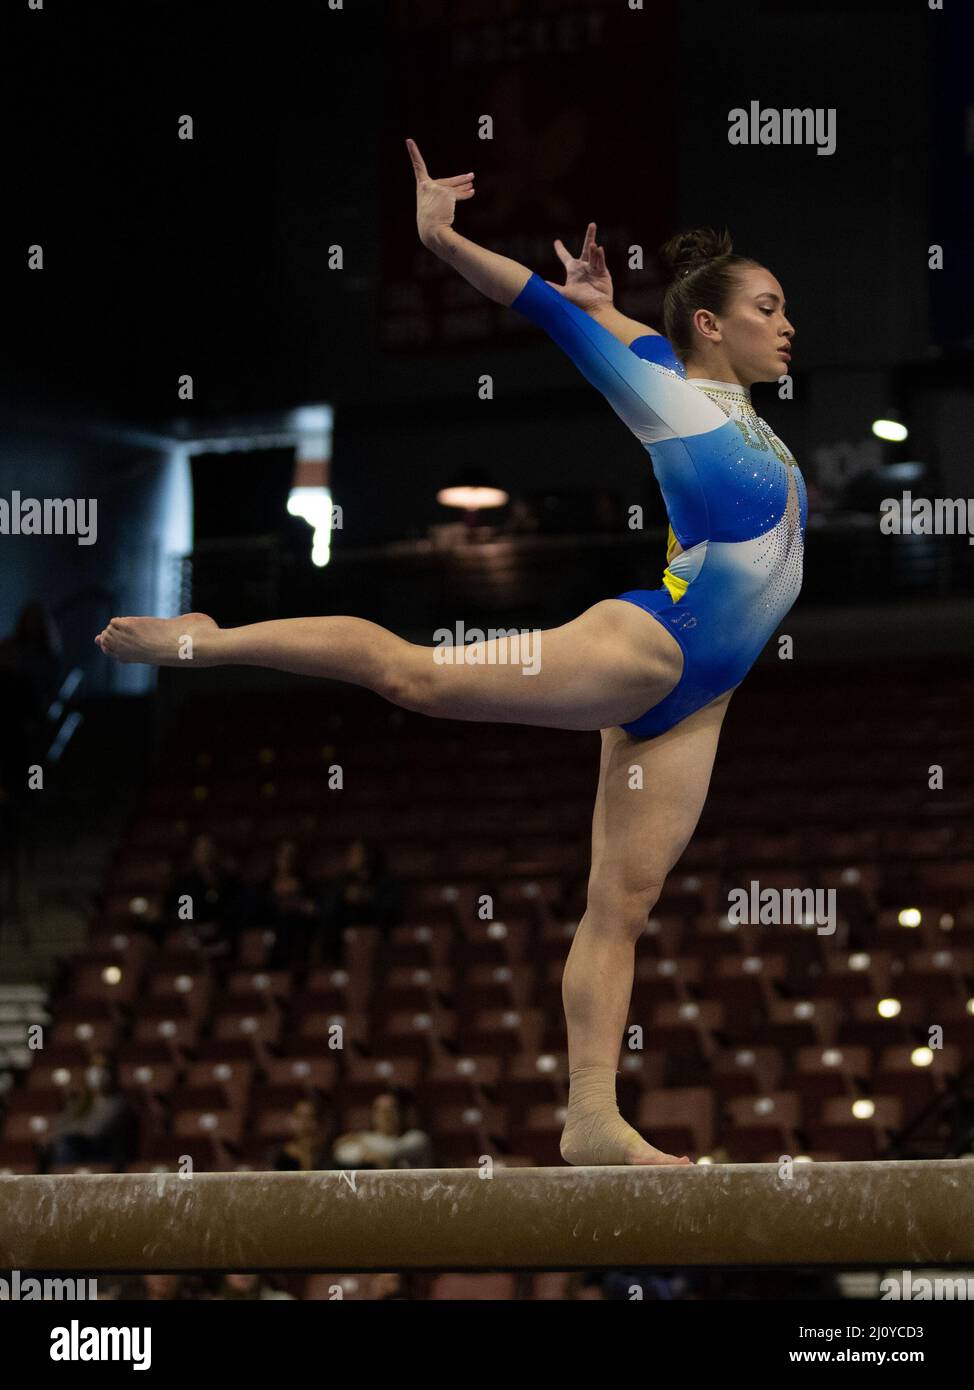 19 marzo 2022: La ginnastica UCLA Norah Flatley compete durante i Campionati di ginnastica femminile 2022 PAC-12. Melissa J. Perenson/CSM Foto Stock